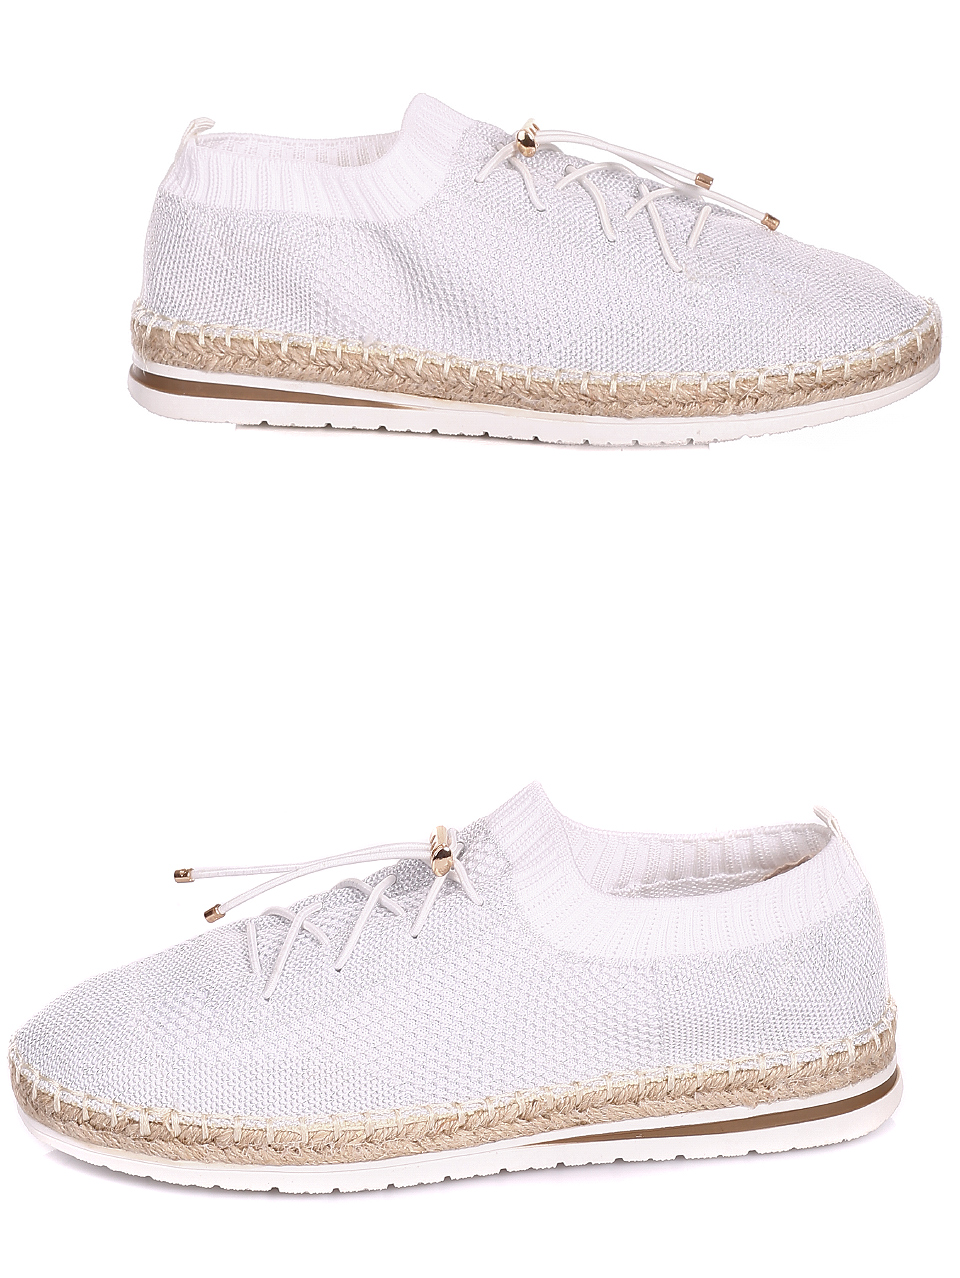 Ежедневни дамски обувки от текстил в бяло 3C-20359 white